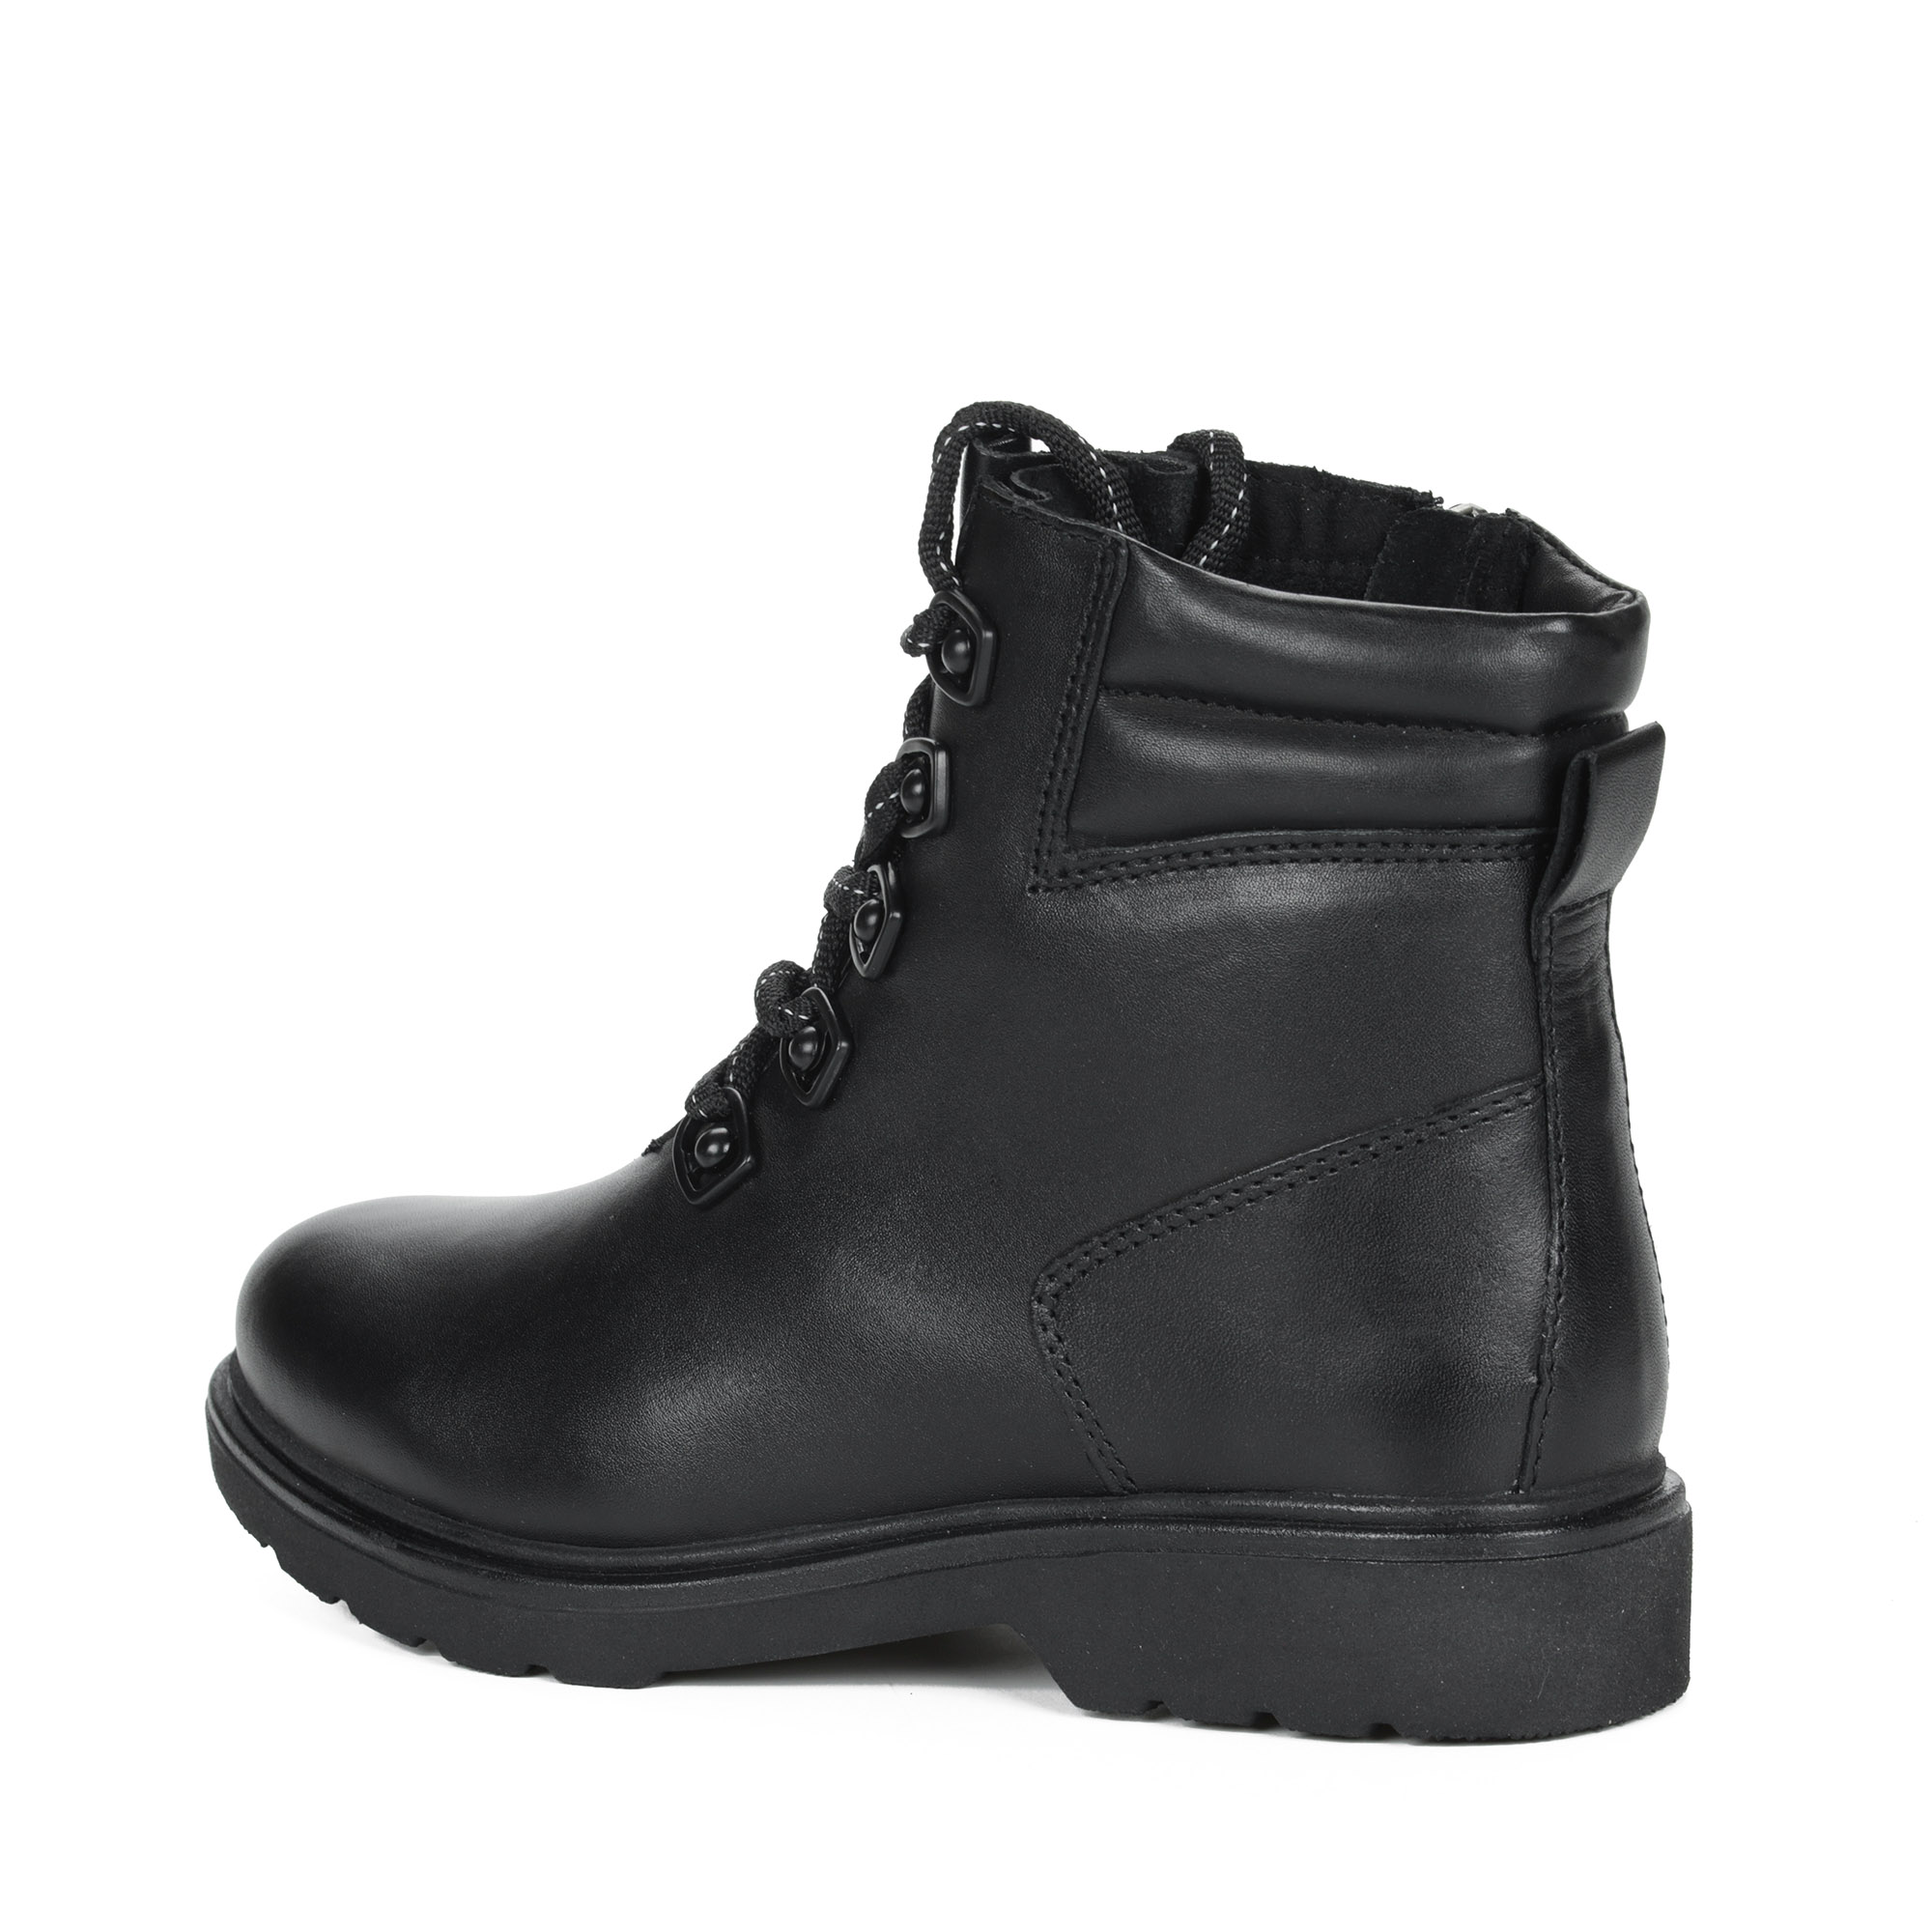 Черные ботинки на шнурках из кожи на подкладке из натуральной шерсти на тракторной подошве MARCO TOZZI PREMIO, размер 39, цвет черный - фото 5